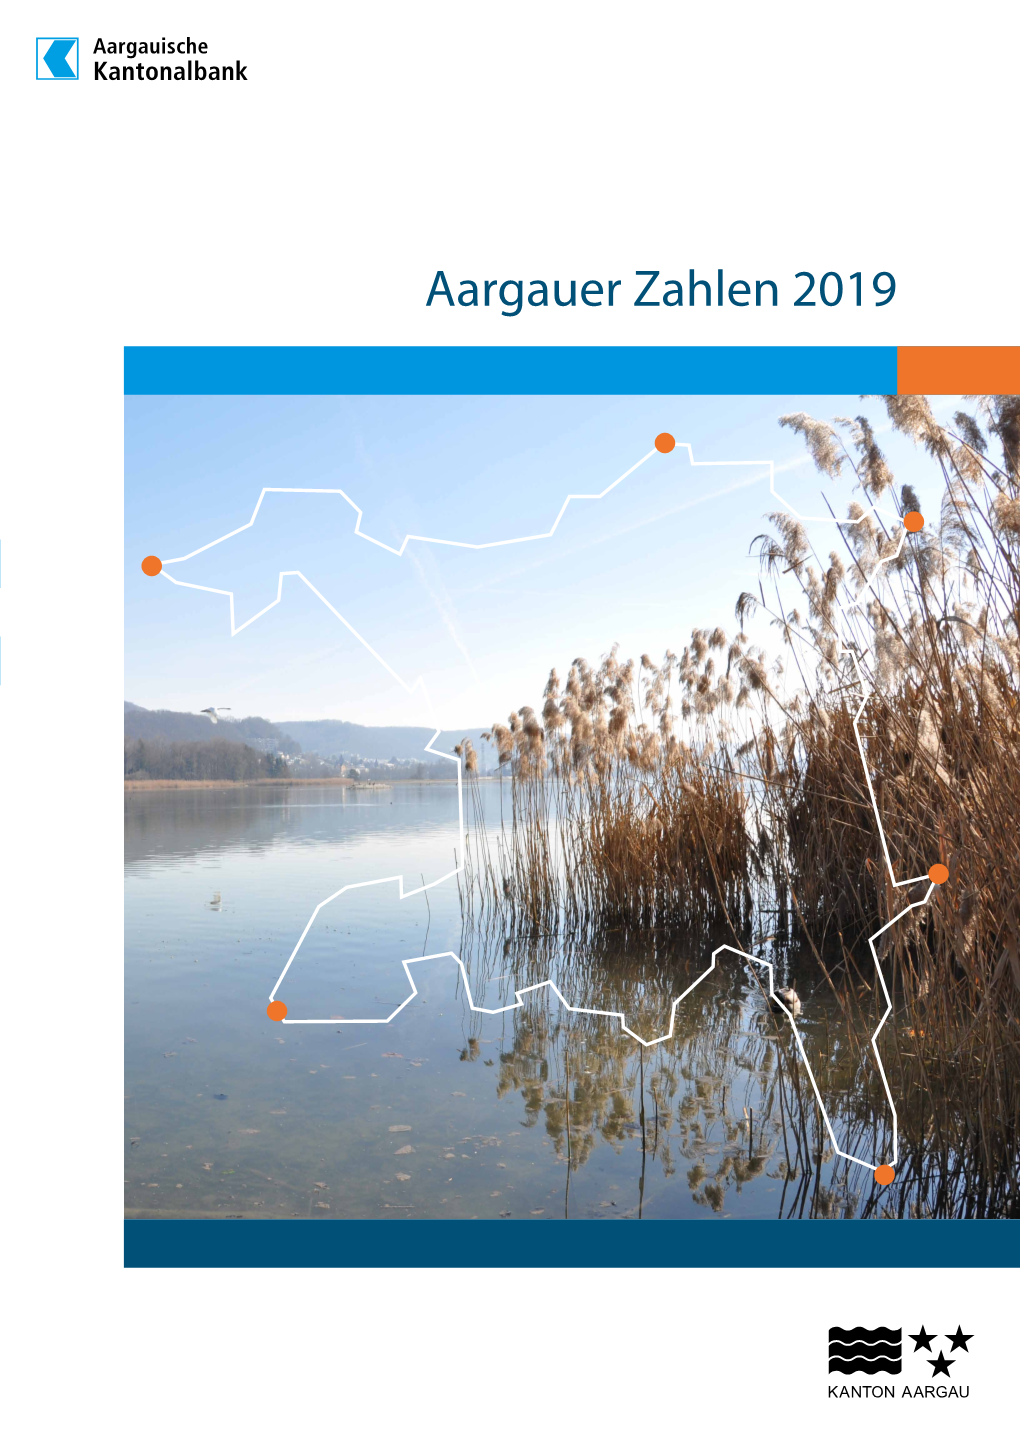 Aargauer Zahlen 2019 2 | Aargauer Zahlen 2019